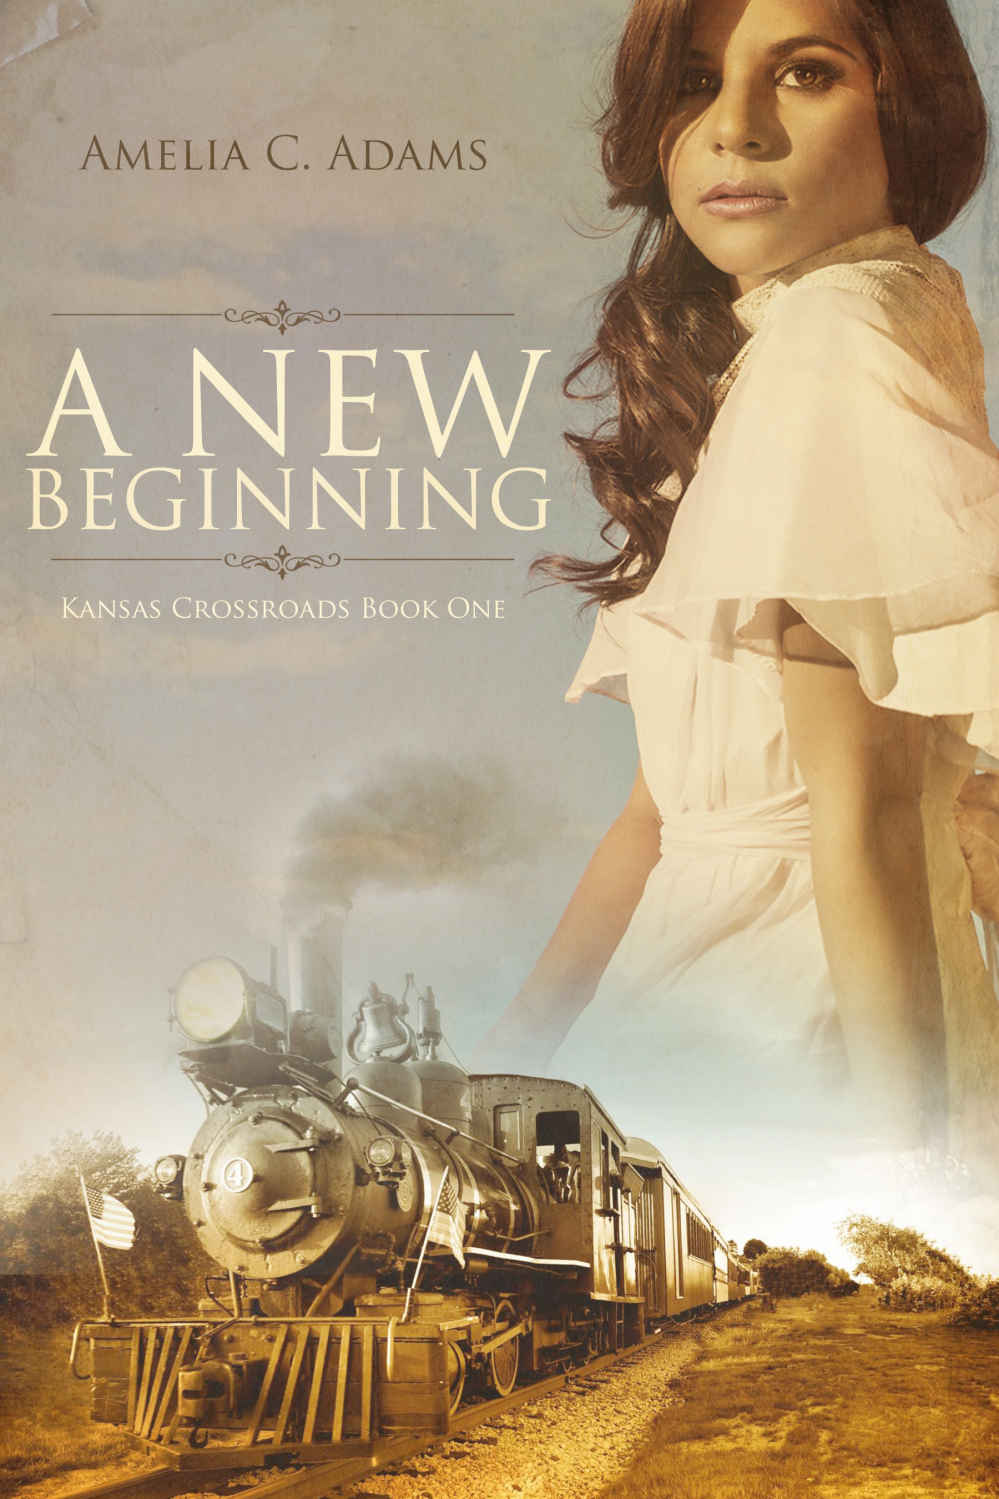 A New Beginning by Amelia C. Adams